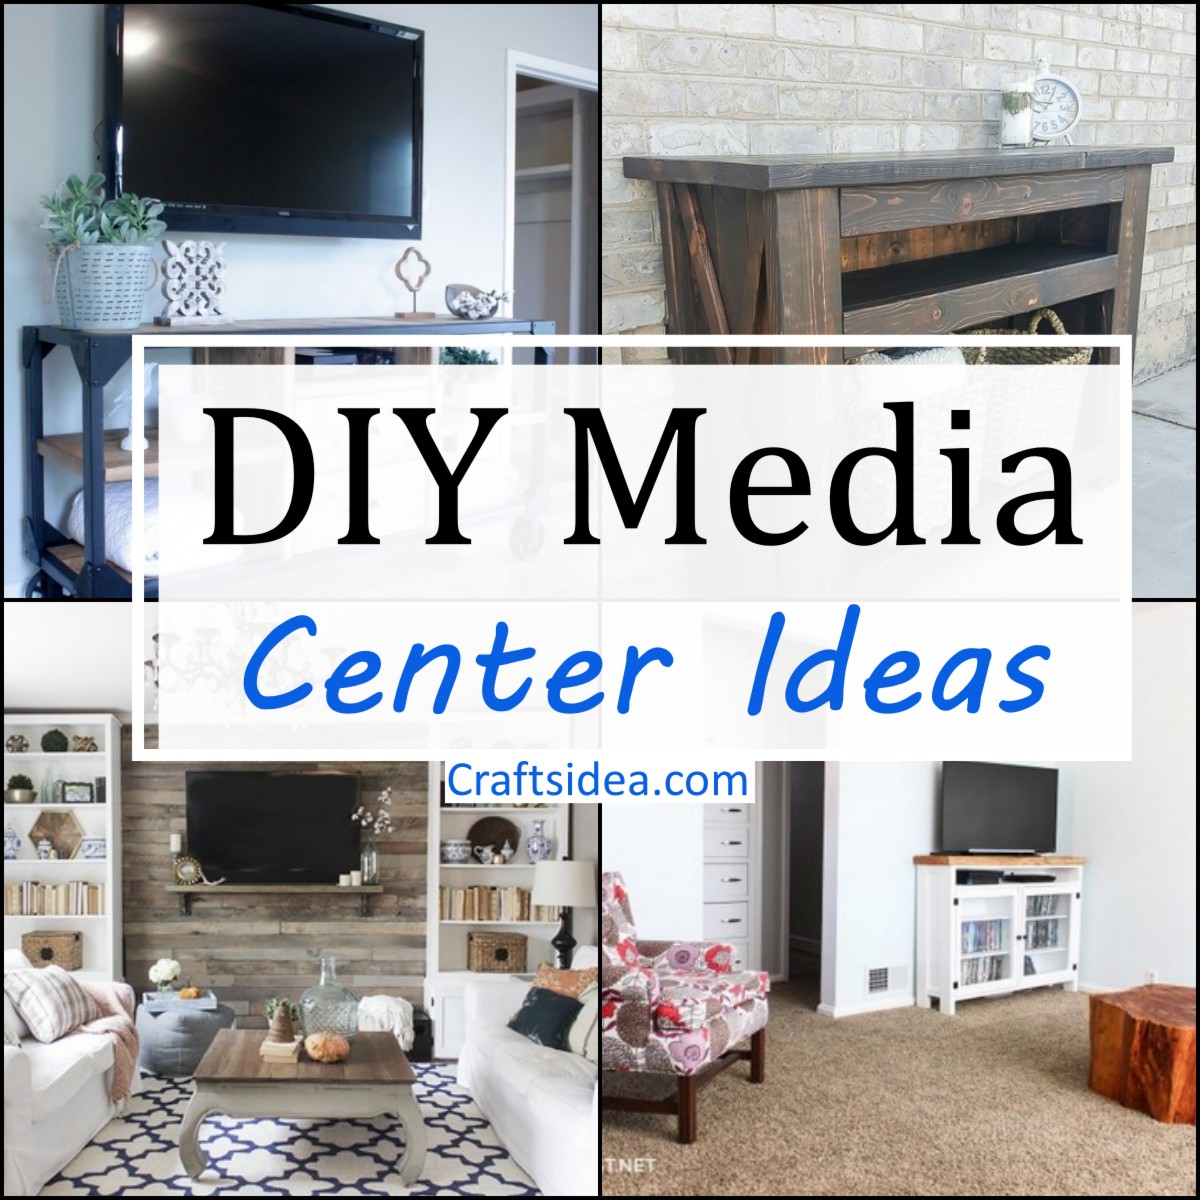 DIY Media Center Ideas